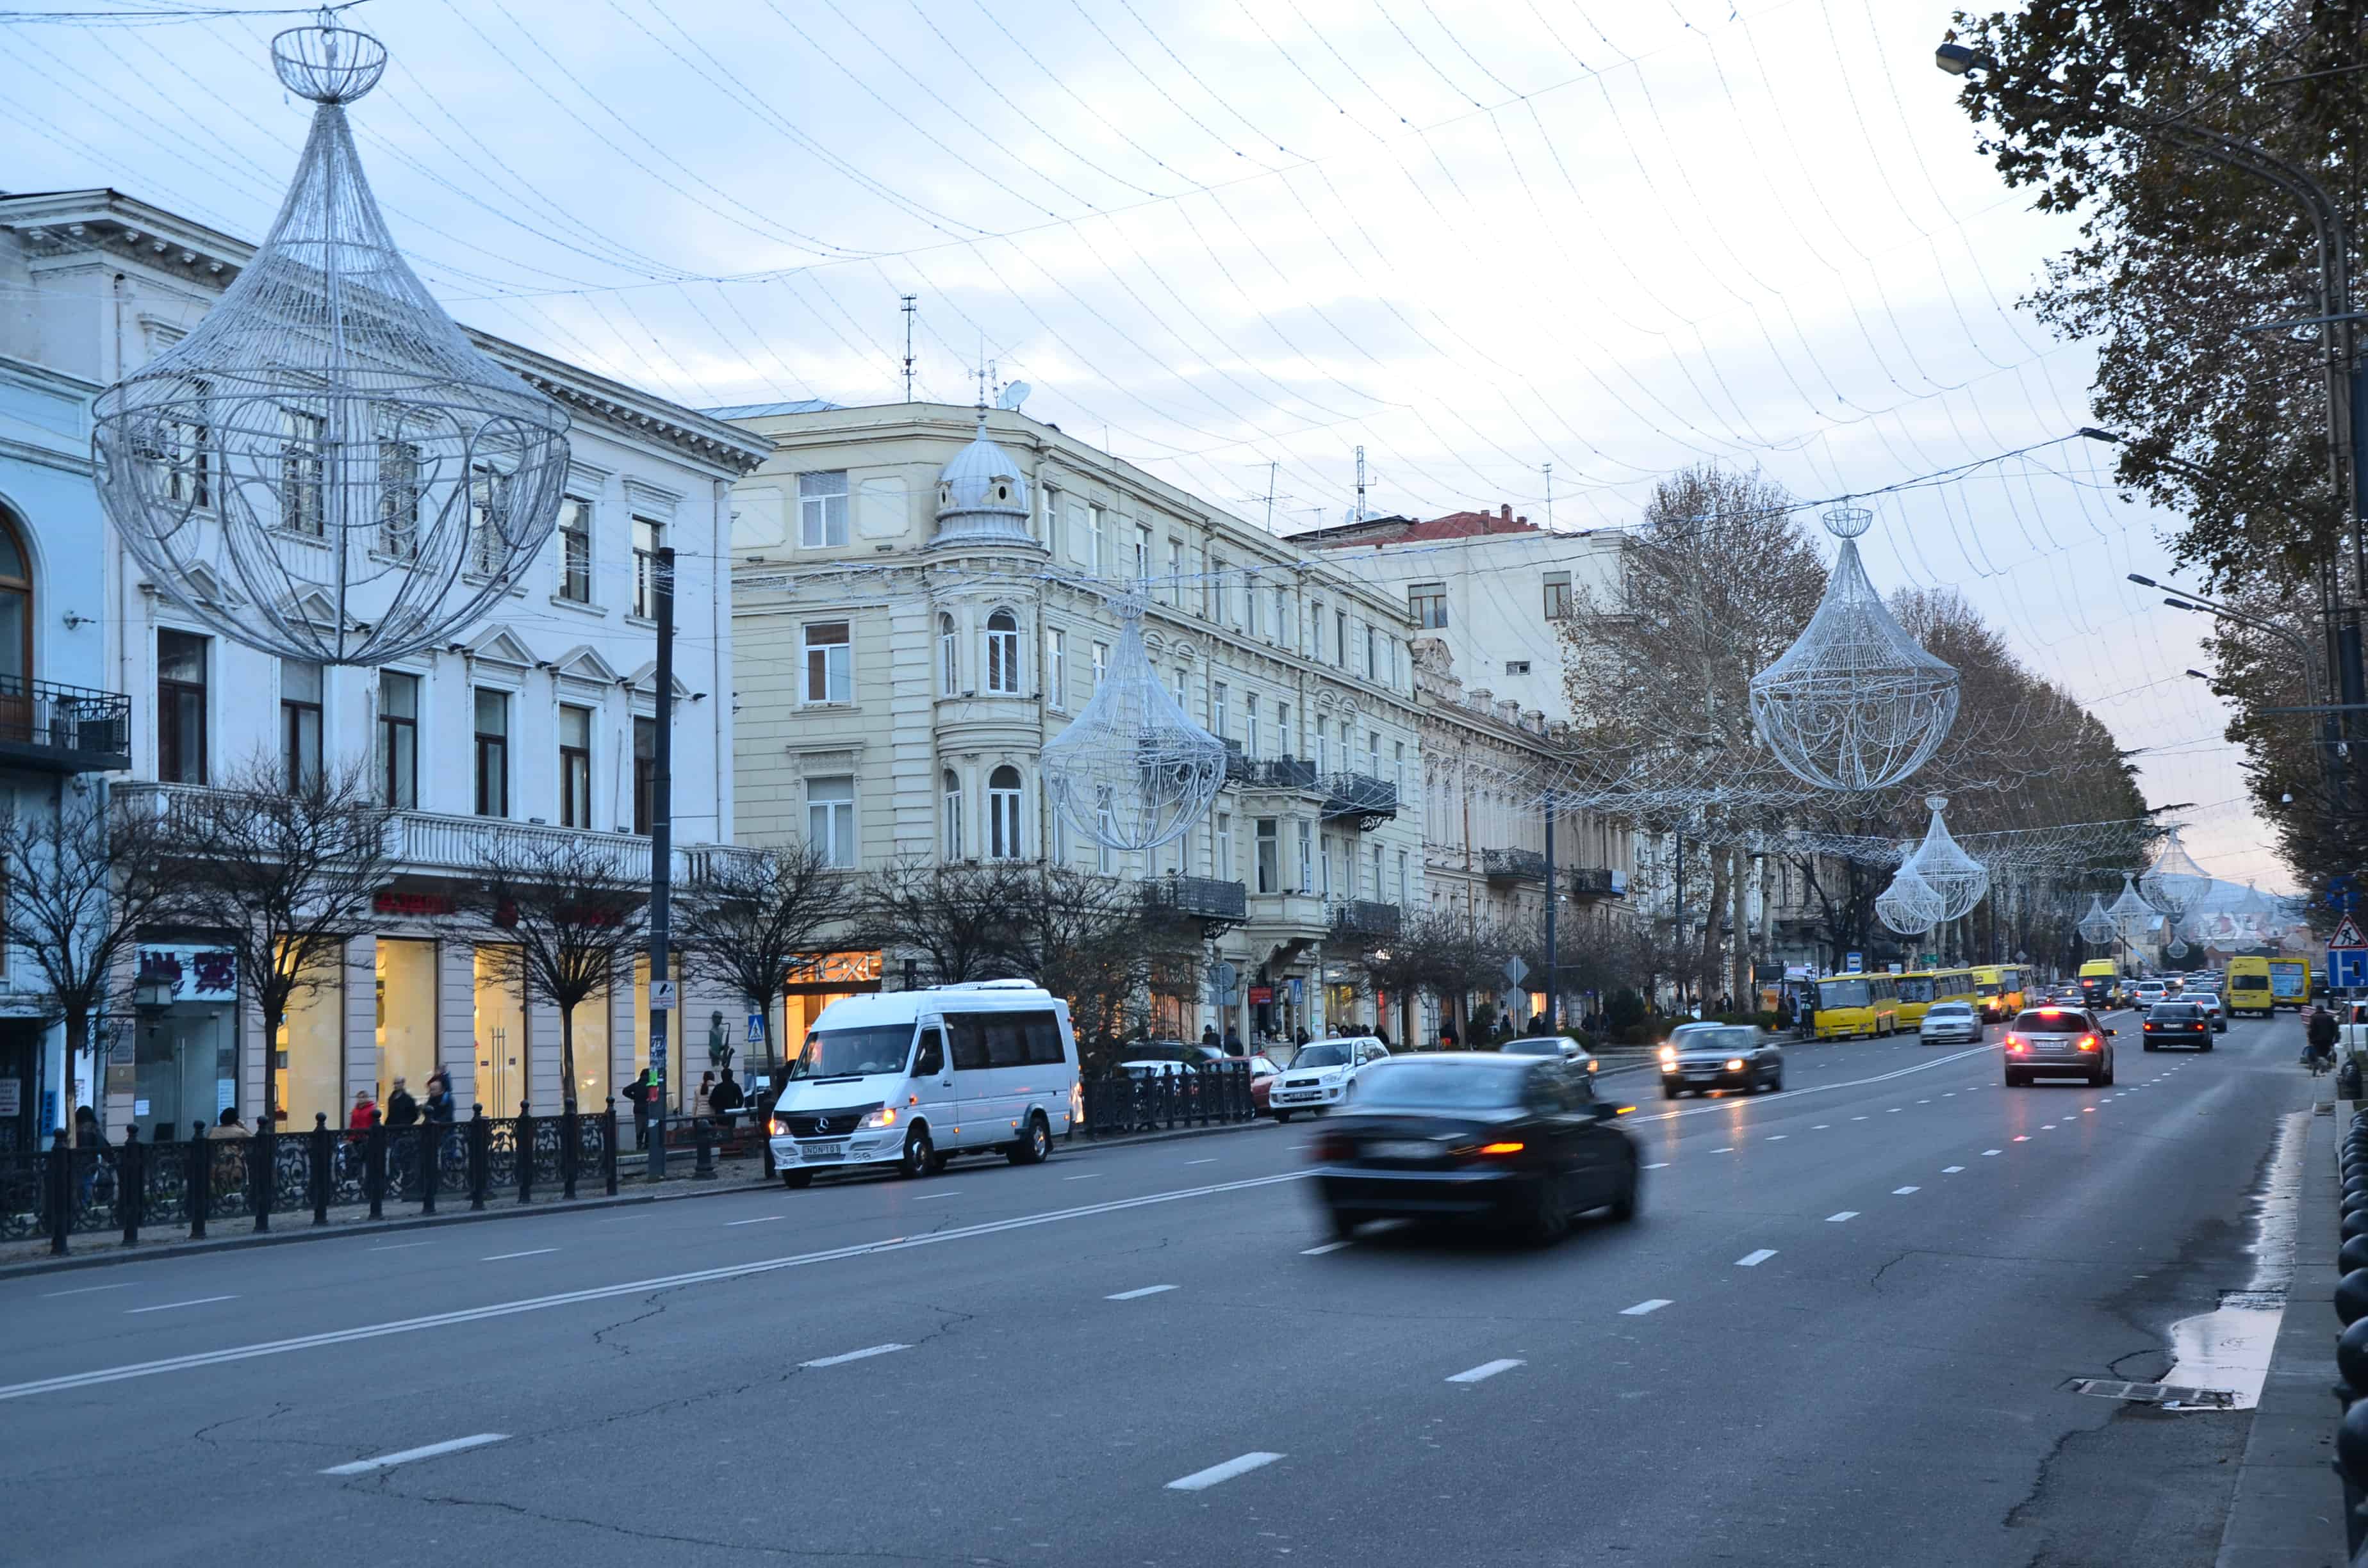 Rustaveli Avenue in Tbilisi, Georgia